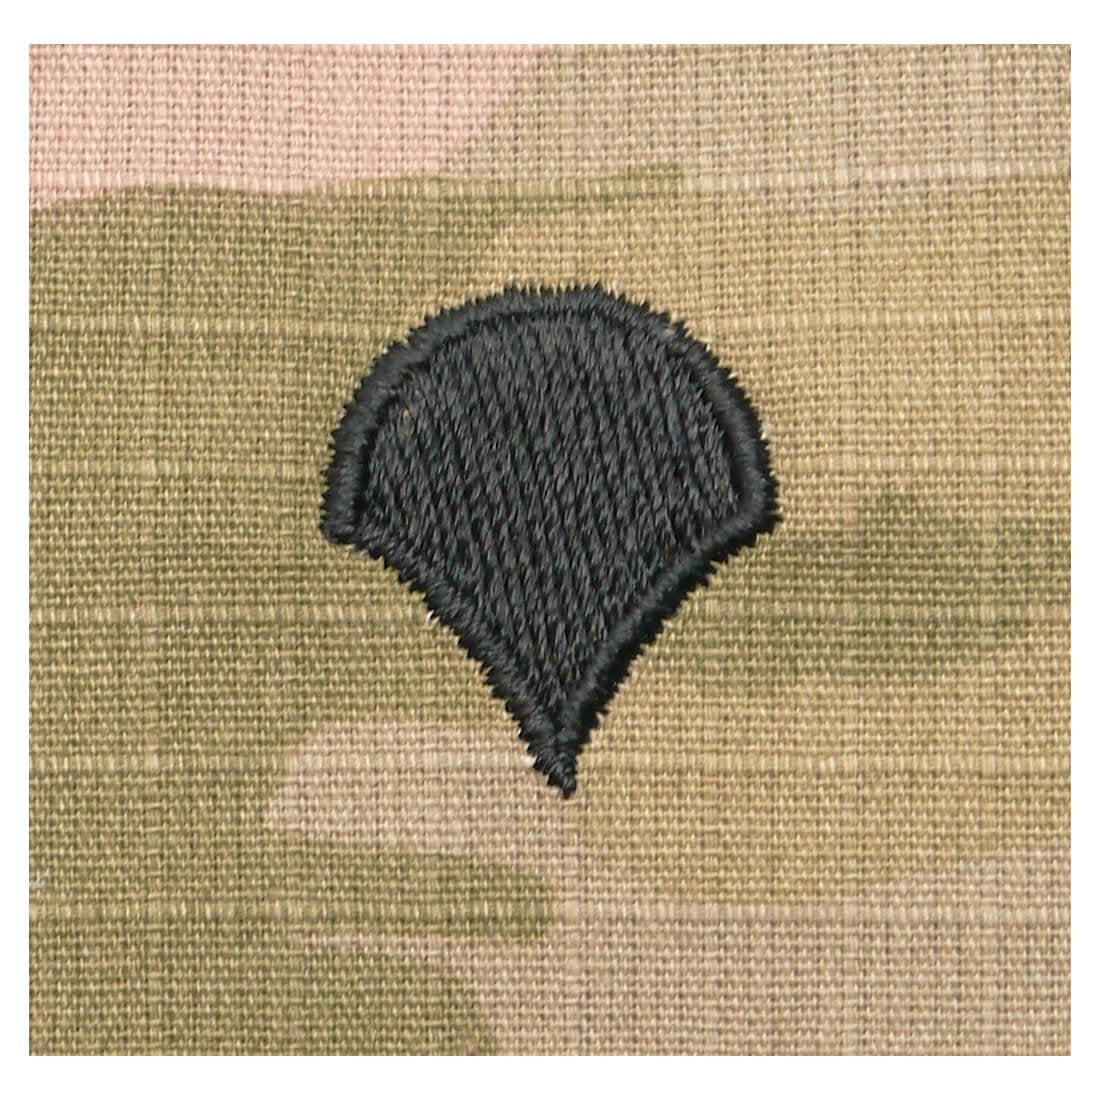 SPC Specialist OCP Army Rank Patch Sew-On - 2x2